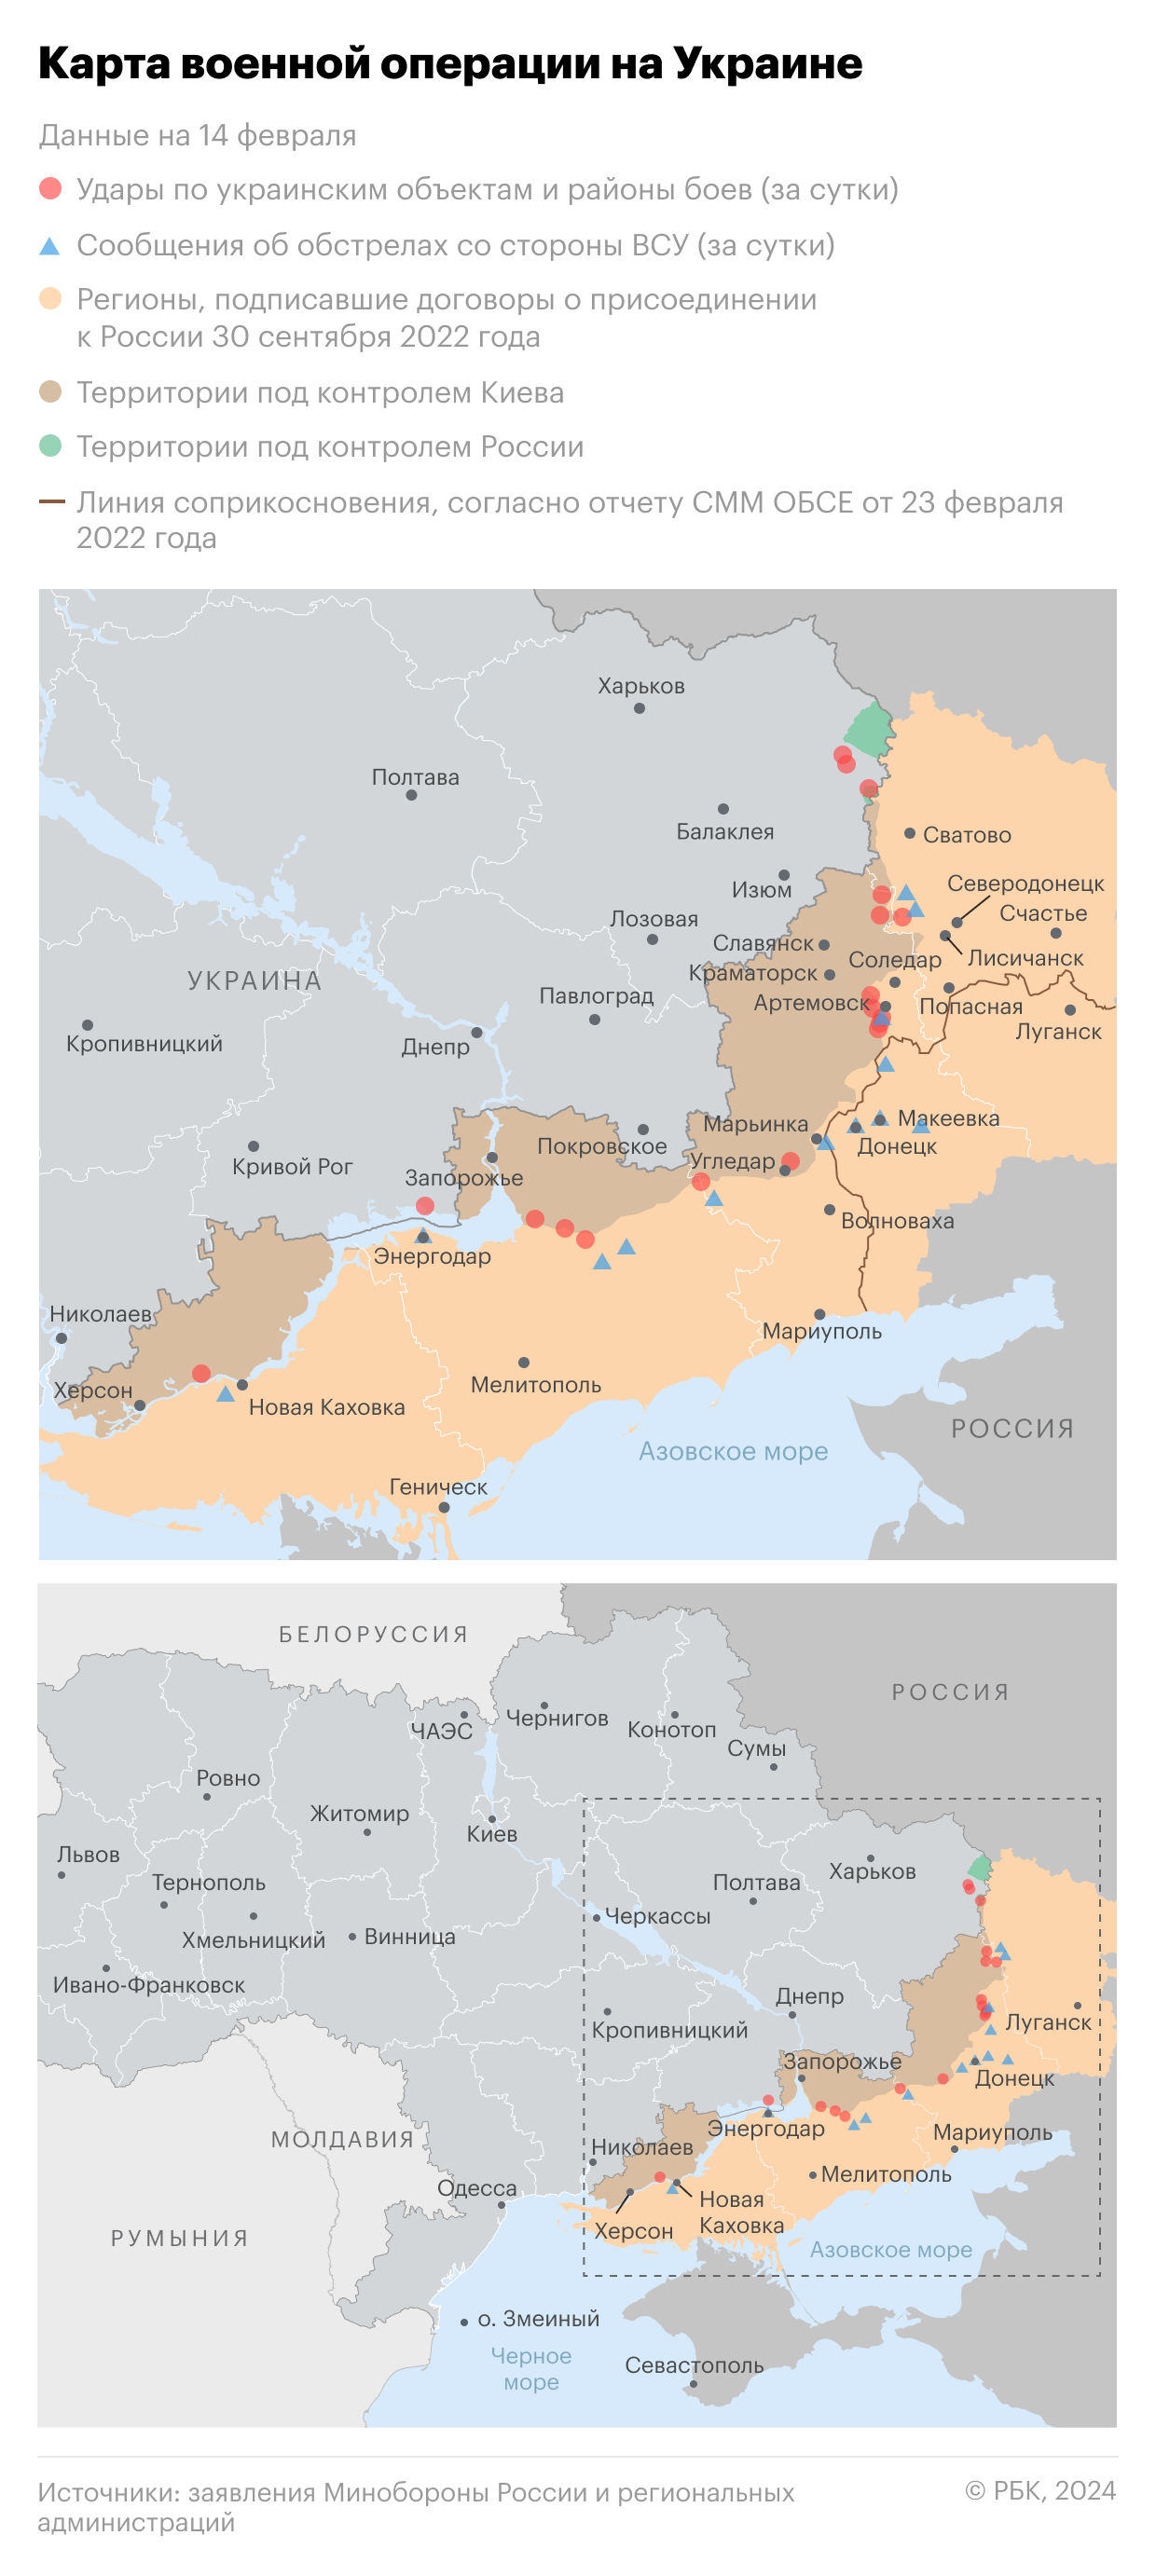 Военная операция на Украине. Карта на 14 февраля